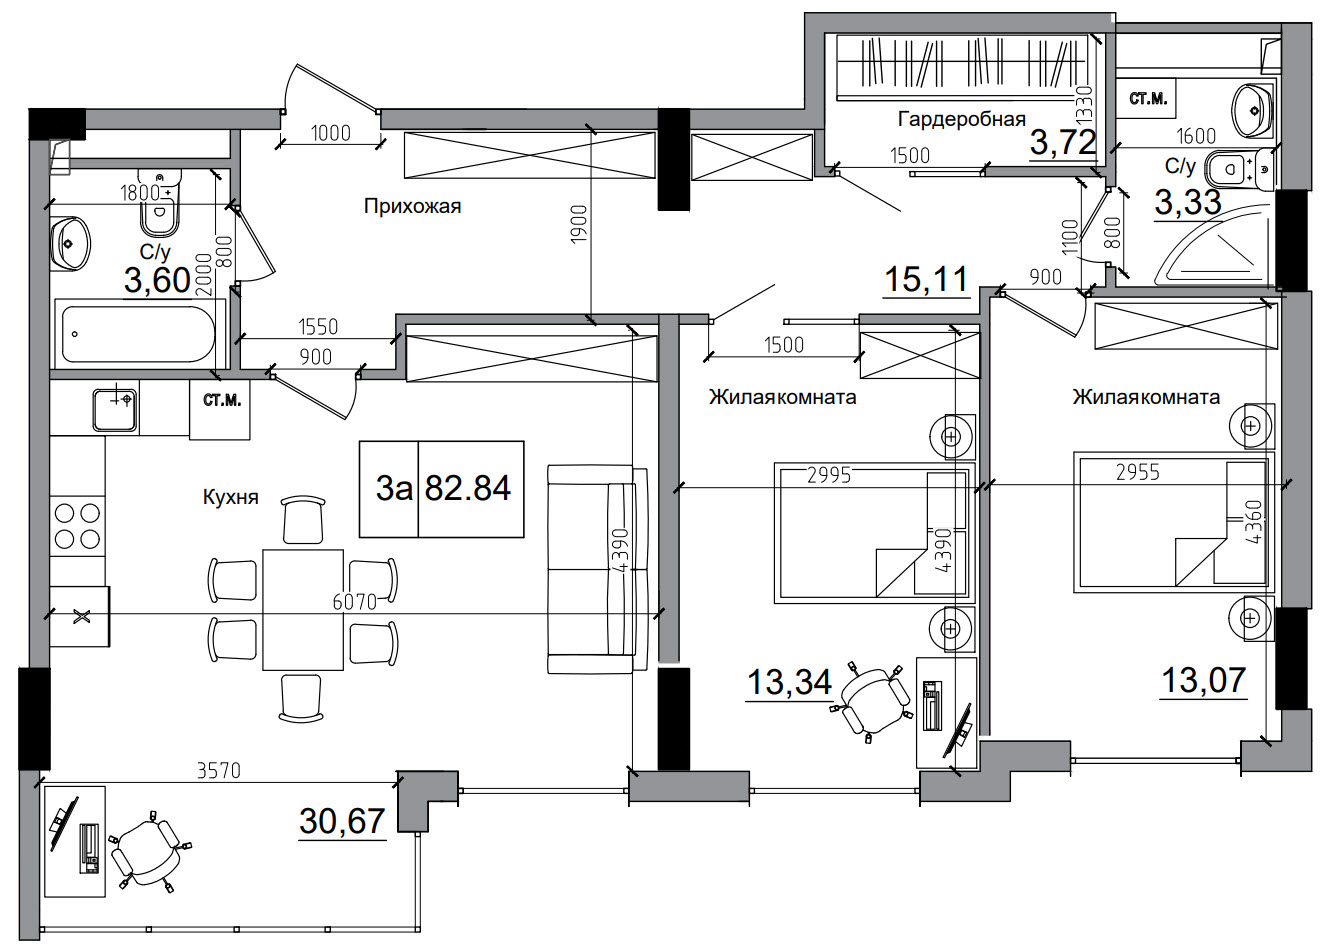 Планування 2-к квартира площею 82.84м2, AB-11-12/00012.